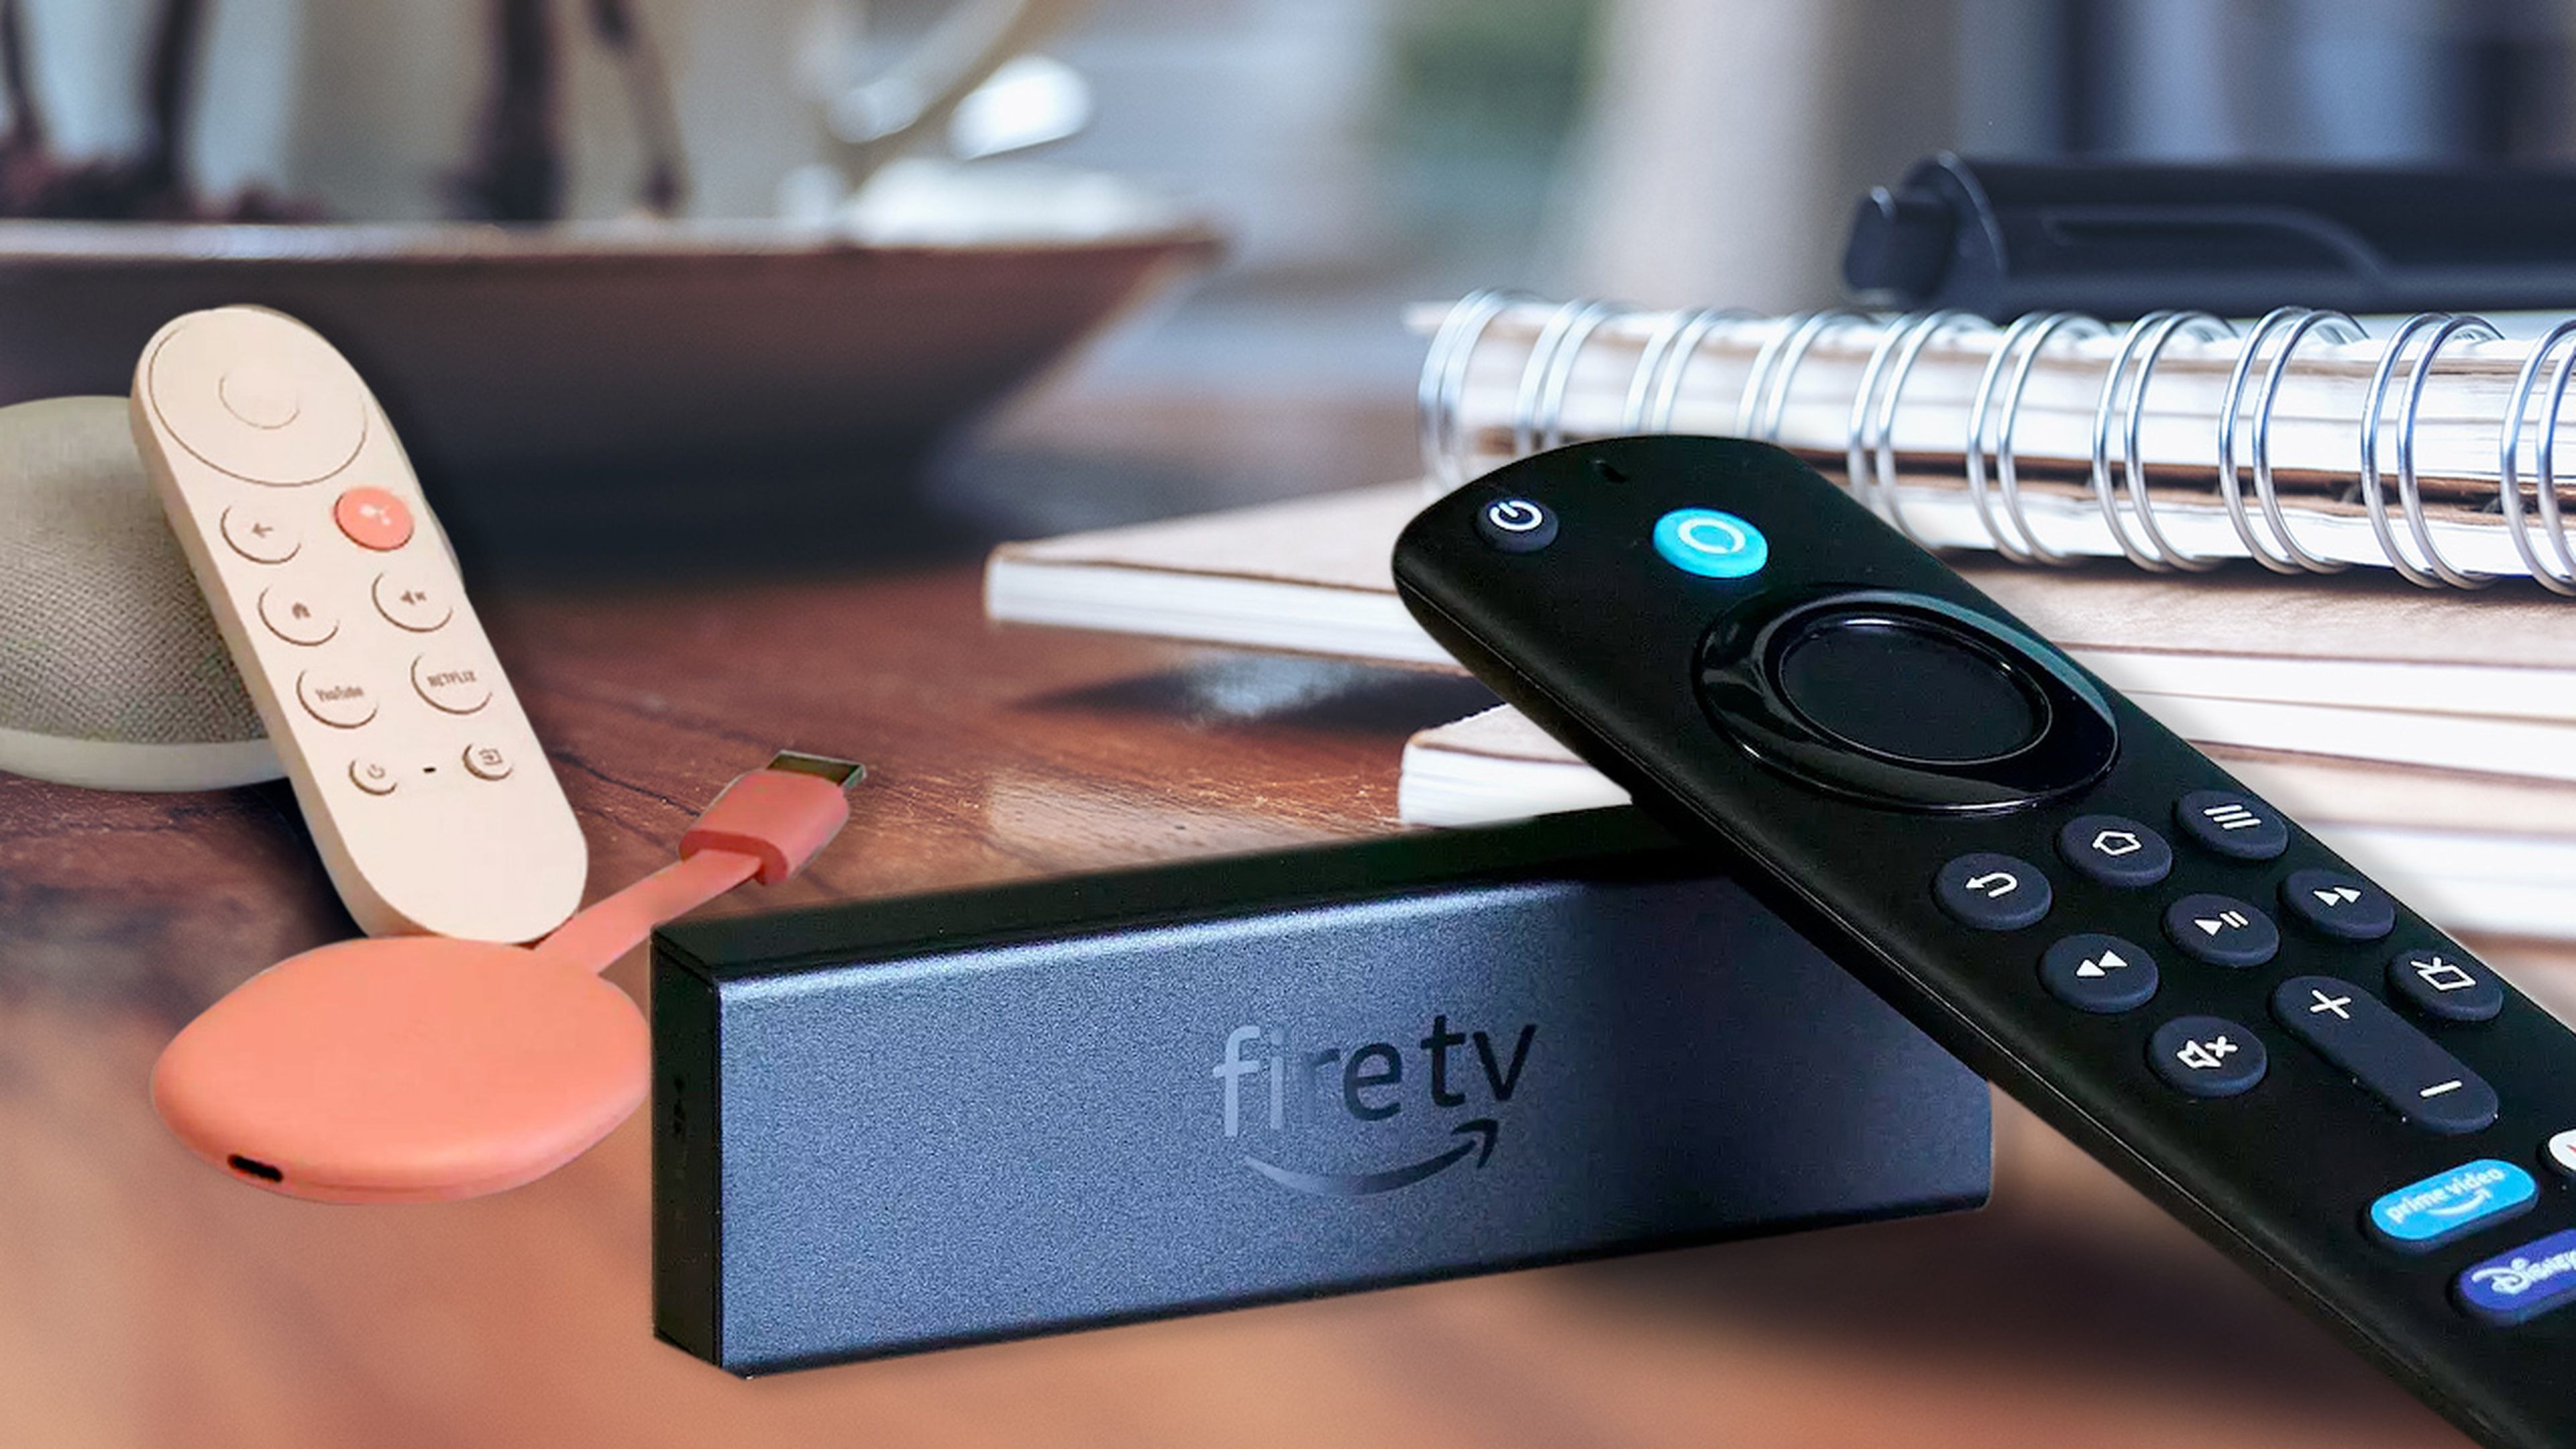 Fire TV Stick 4K Max, análisis: review con características y precio